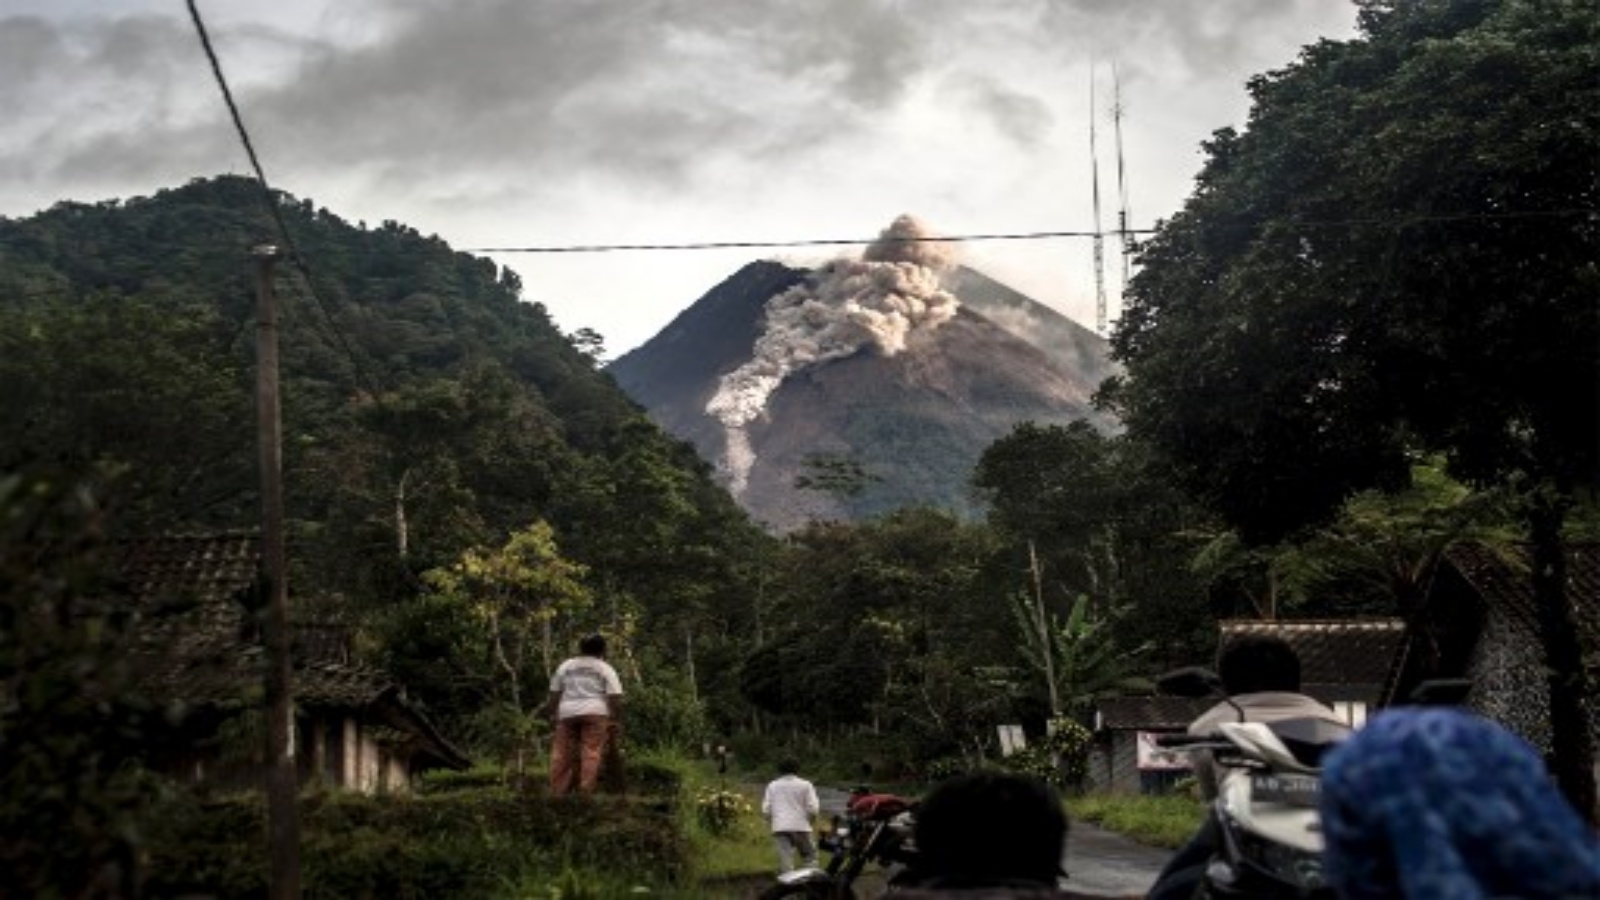 جبل ميرابي ، البركان الأكثر نشاطًا في إندونيسيا ، حيث يقذف الصخور والرماد ليوم آخر في يوجياكارتا في 27 يناير 2021.